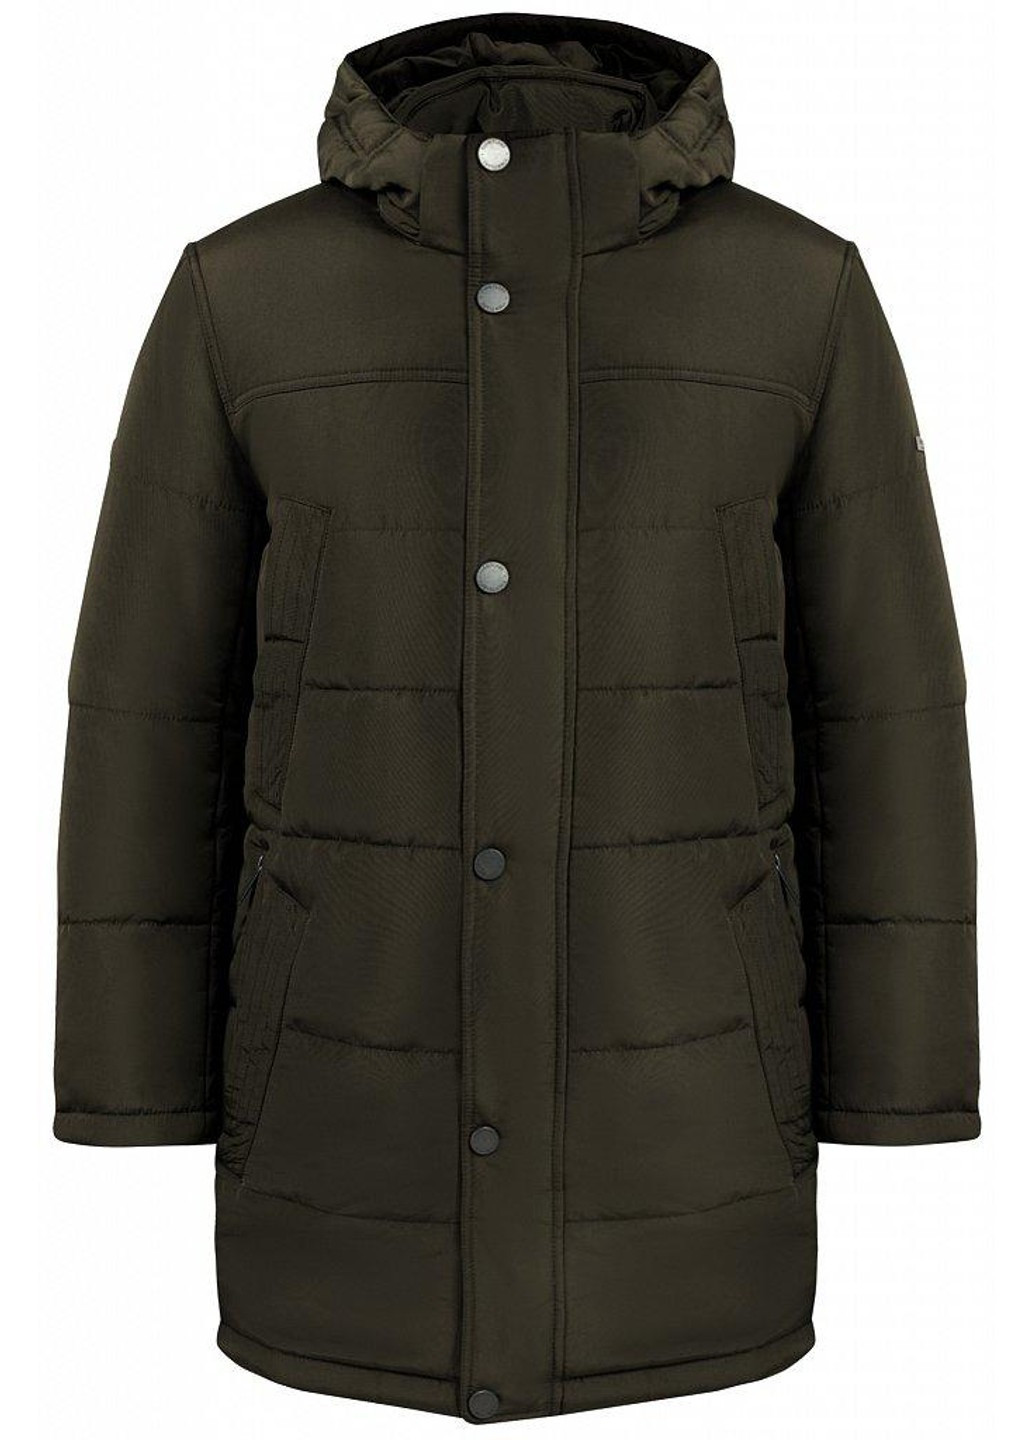 Коричневая зимняя зимняя куртка w19-21012-601 Finn Flare